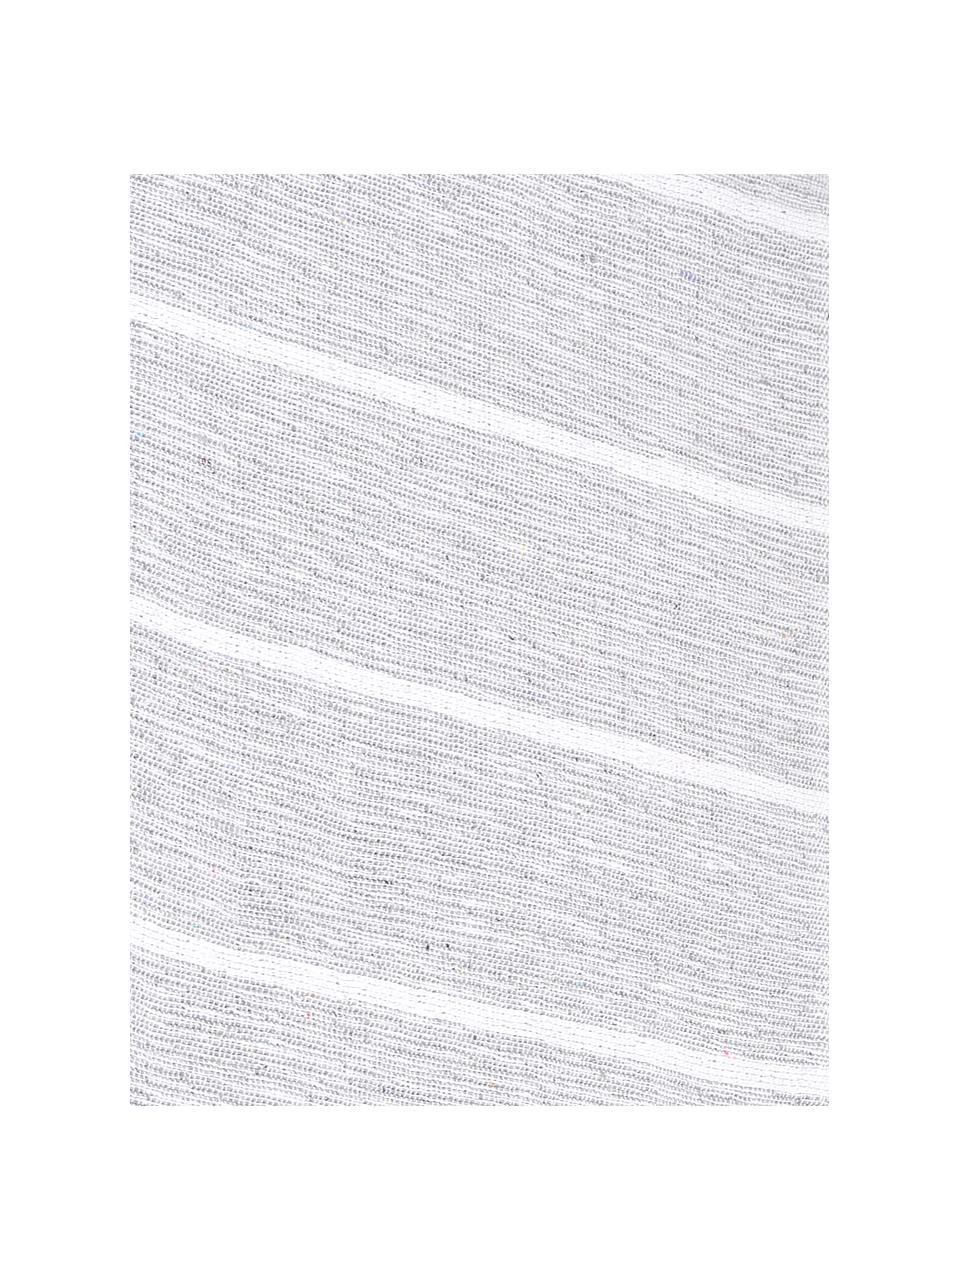 Gestreifte Tagesdecke Homely in Grau/Weiss, 80% Baumwolle, 20% Polyester, Graublau, Weiss, B 230 x L 250 cm (für Betten ab 160 x 200)